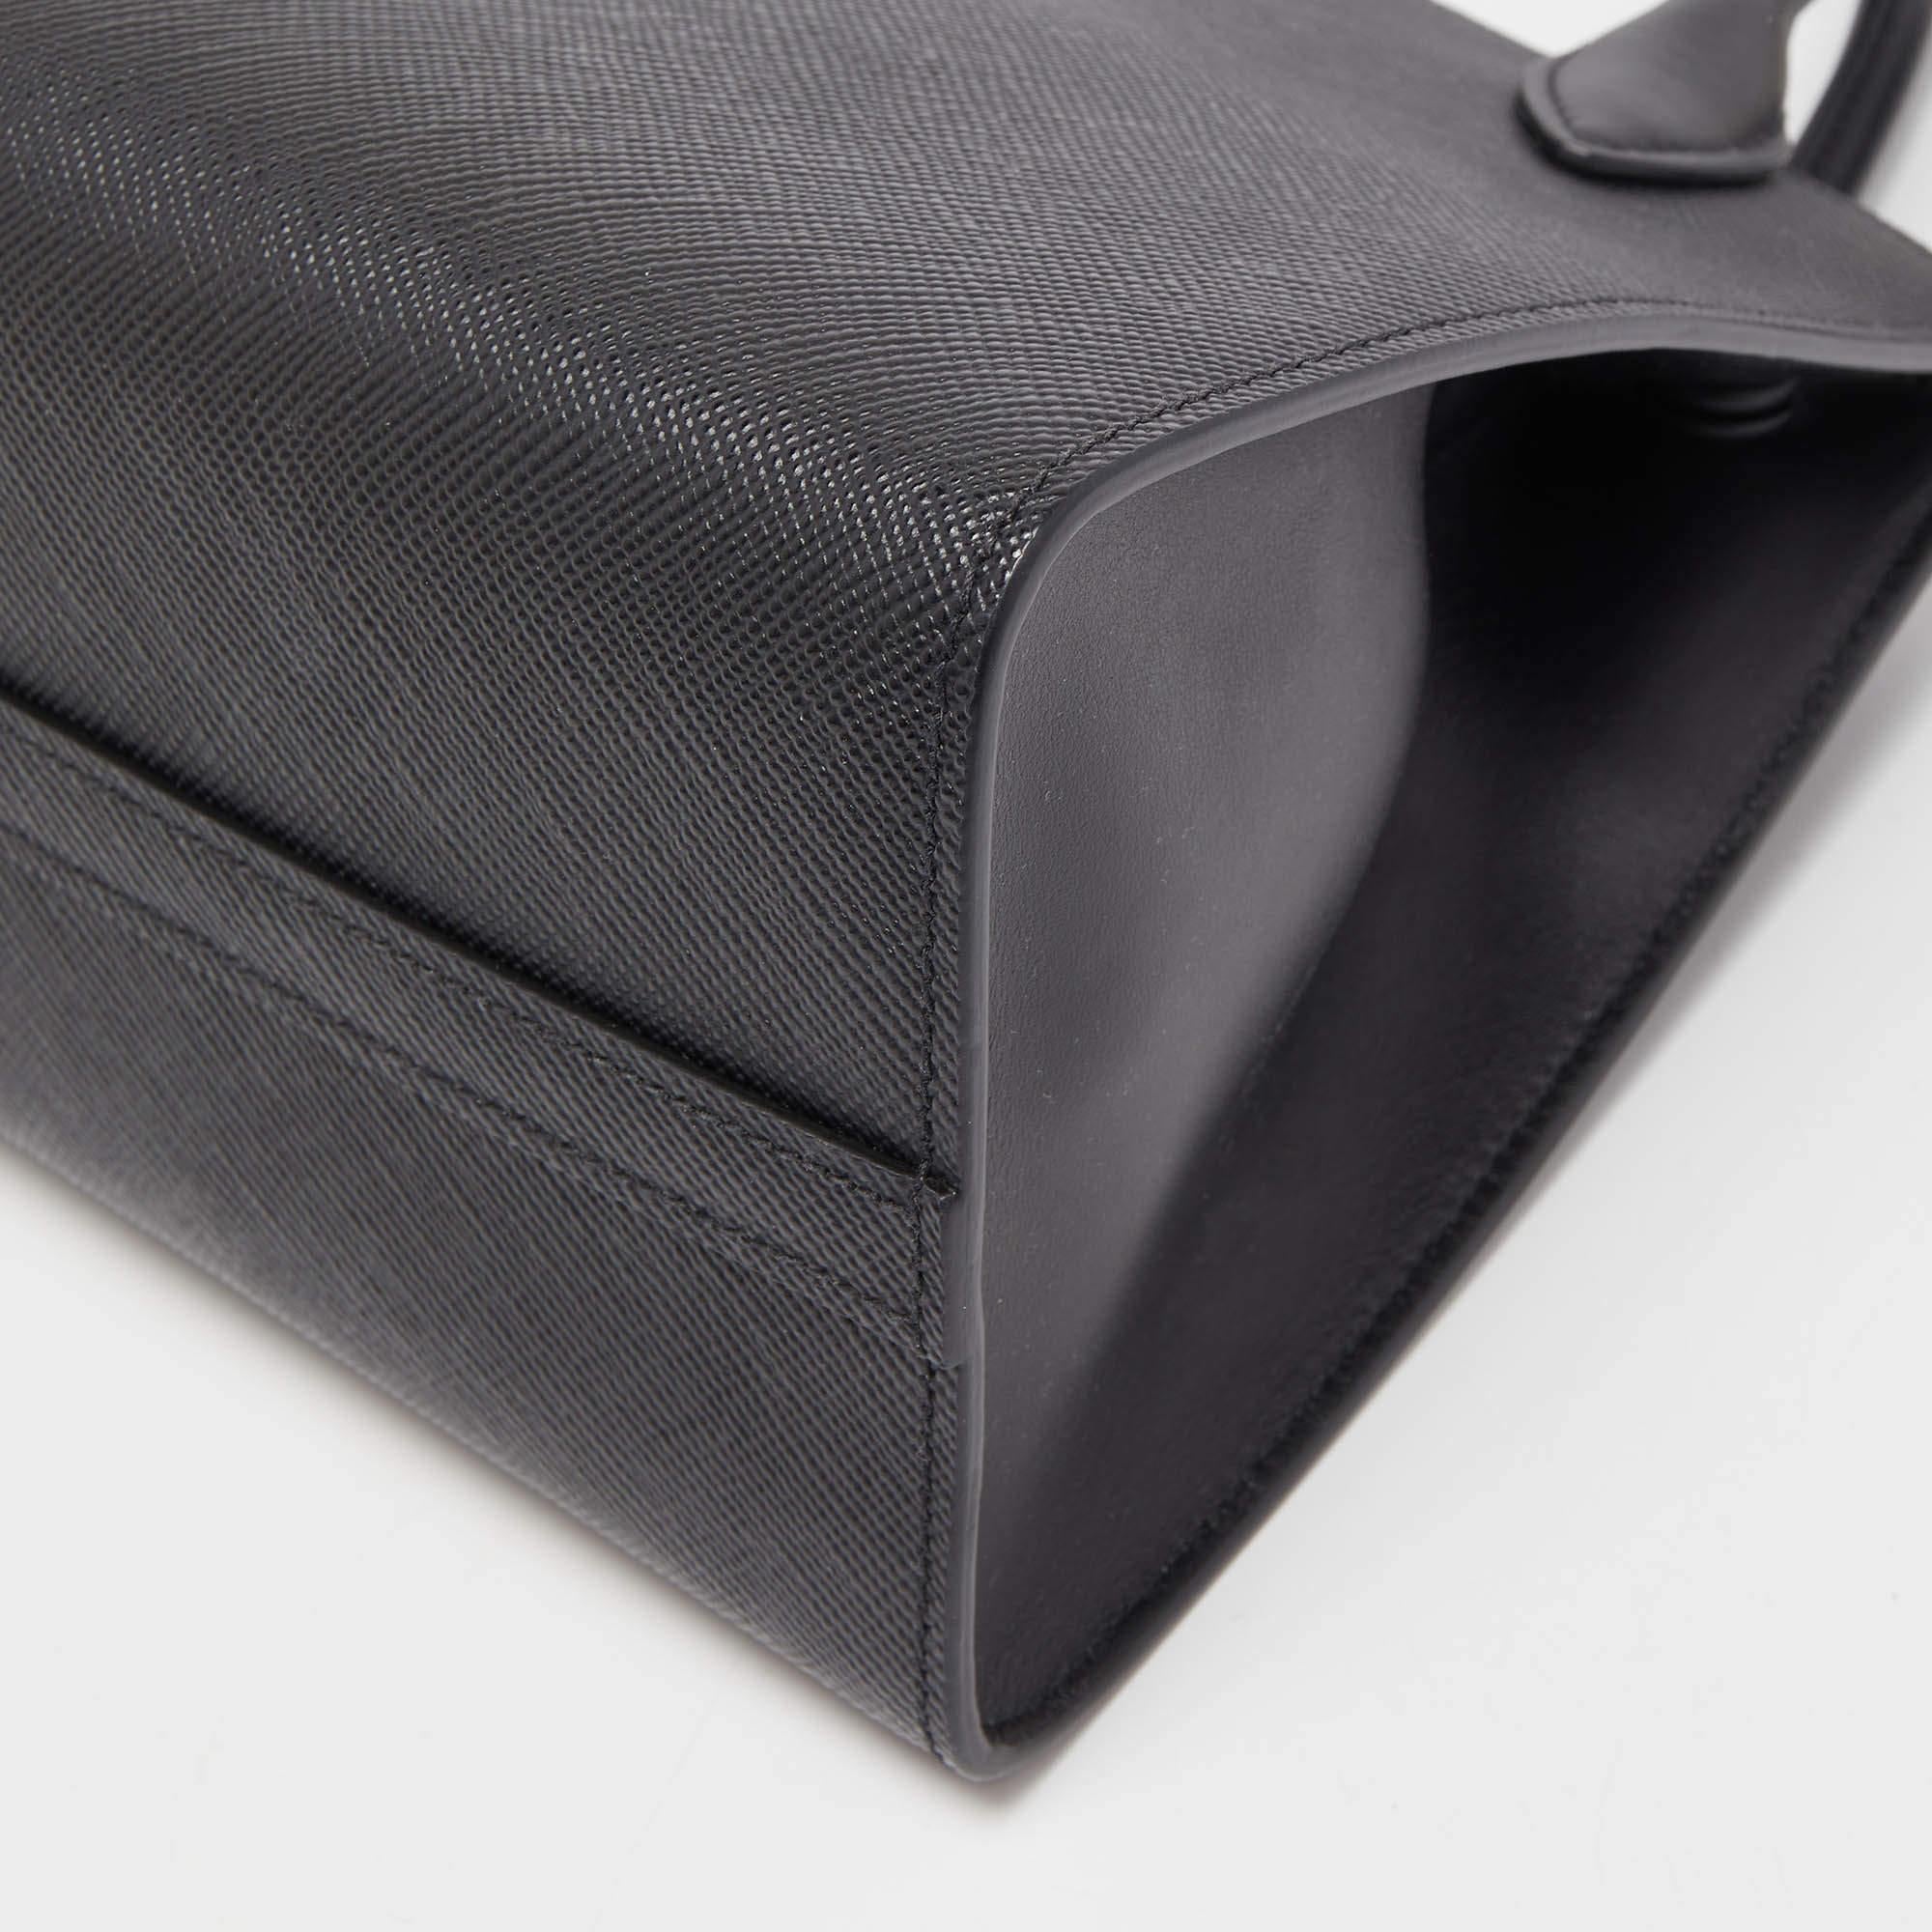 Prada Black Saffiano Cuir Leather Small Monochrome Tote 2